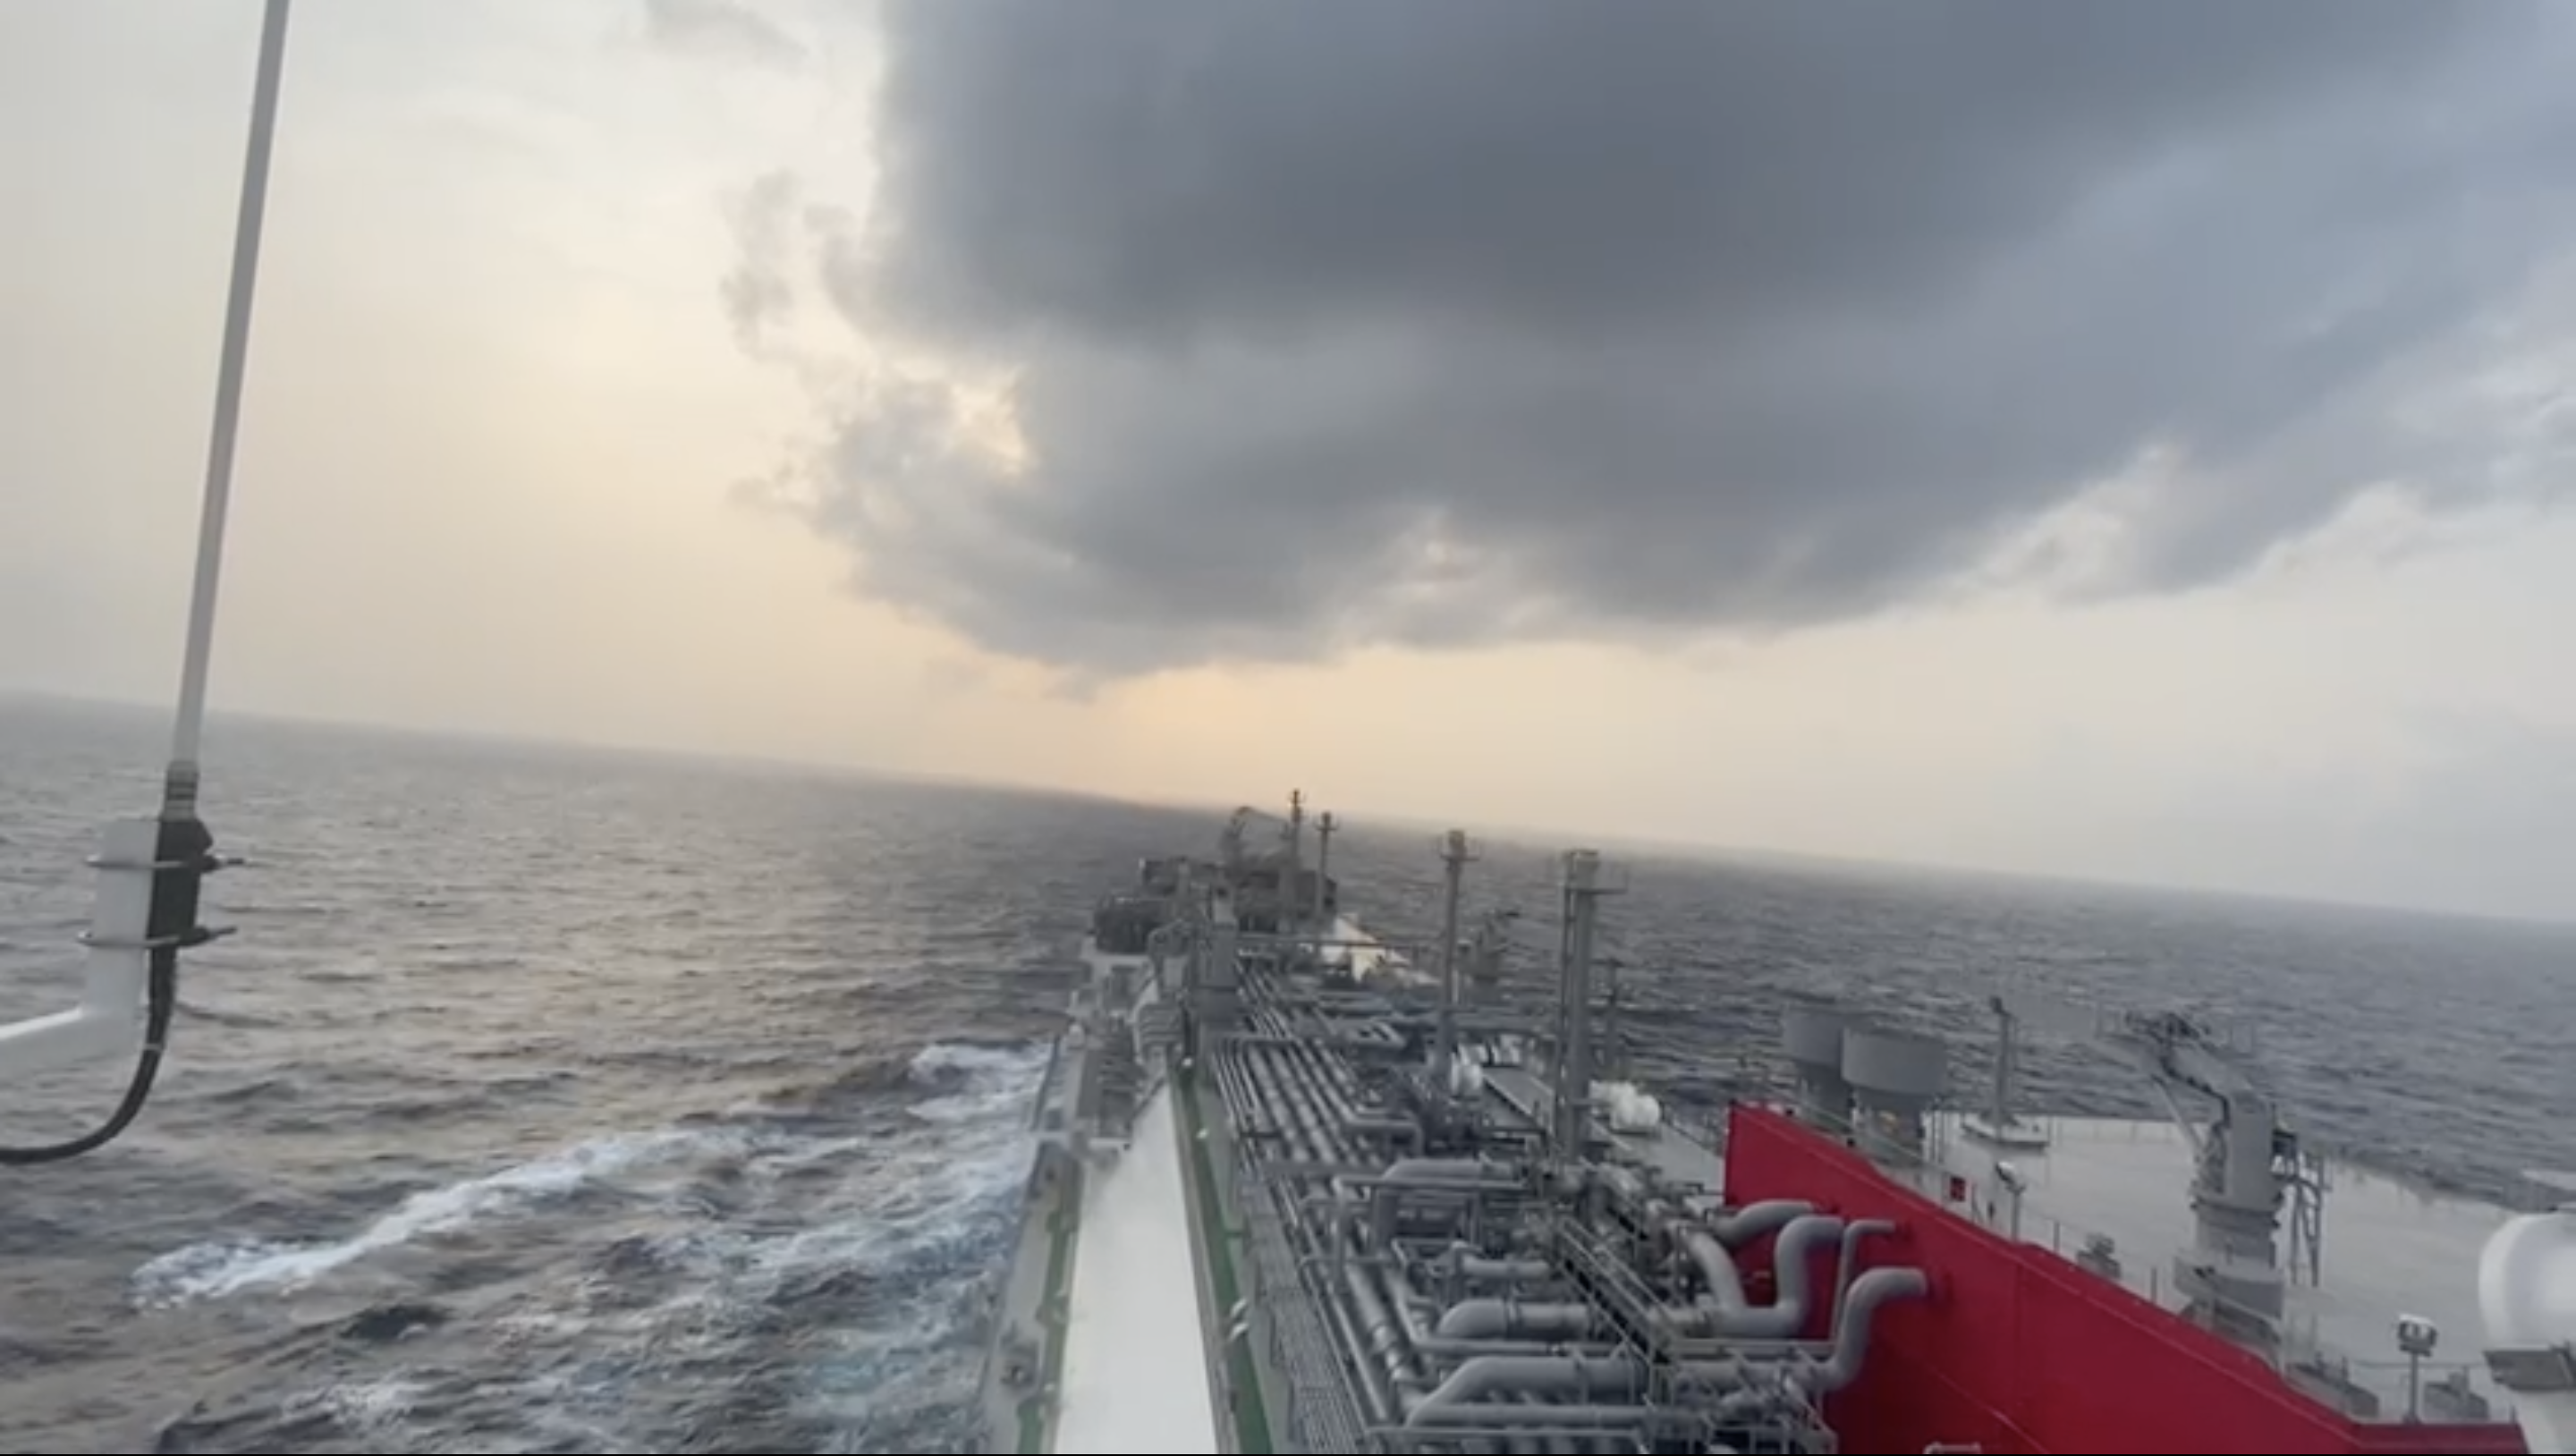 Türkiye’nin ilk yüzer LNG depolama ve gazlaştırma gemisi olan Ertuğrul Gazi’ye bayrak asılmasının ardından ilk görüntüler